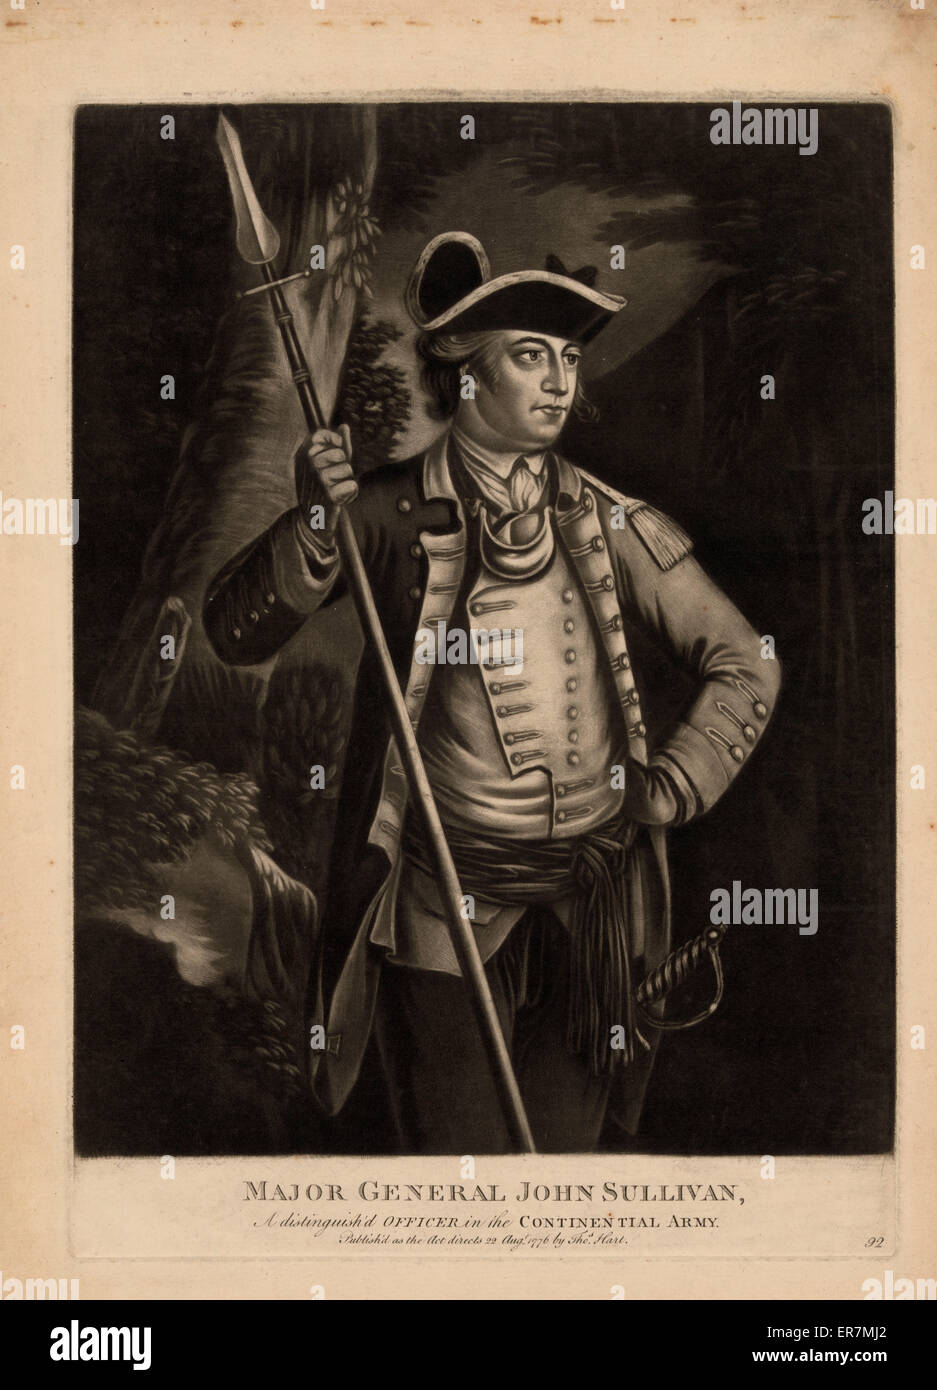 Major General John Sullivan, eine Unterscheidung war Offizier in der kontinentalen Armee sic. Druck zeigt John Sullivan, Dreiviertel Länge Porträt, tragen der militärischen uniform, stehend, nach rechts, halten Speer in der rechten Hand, linke Hand auf die Hüfte. Datum 1776 Augt. 2 Stockfoto